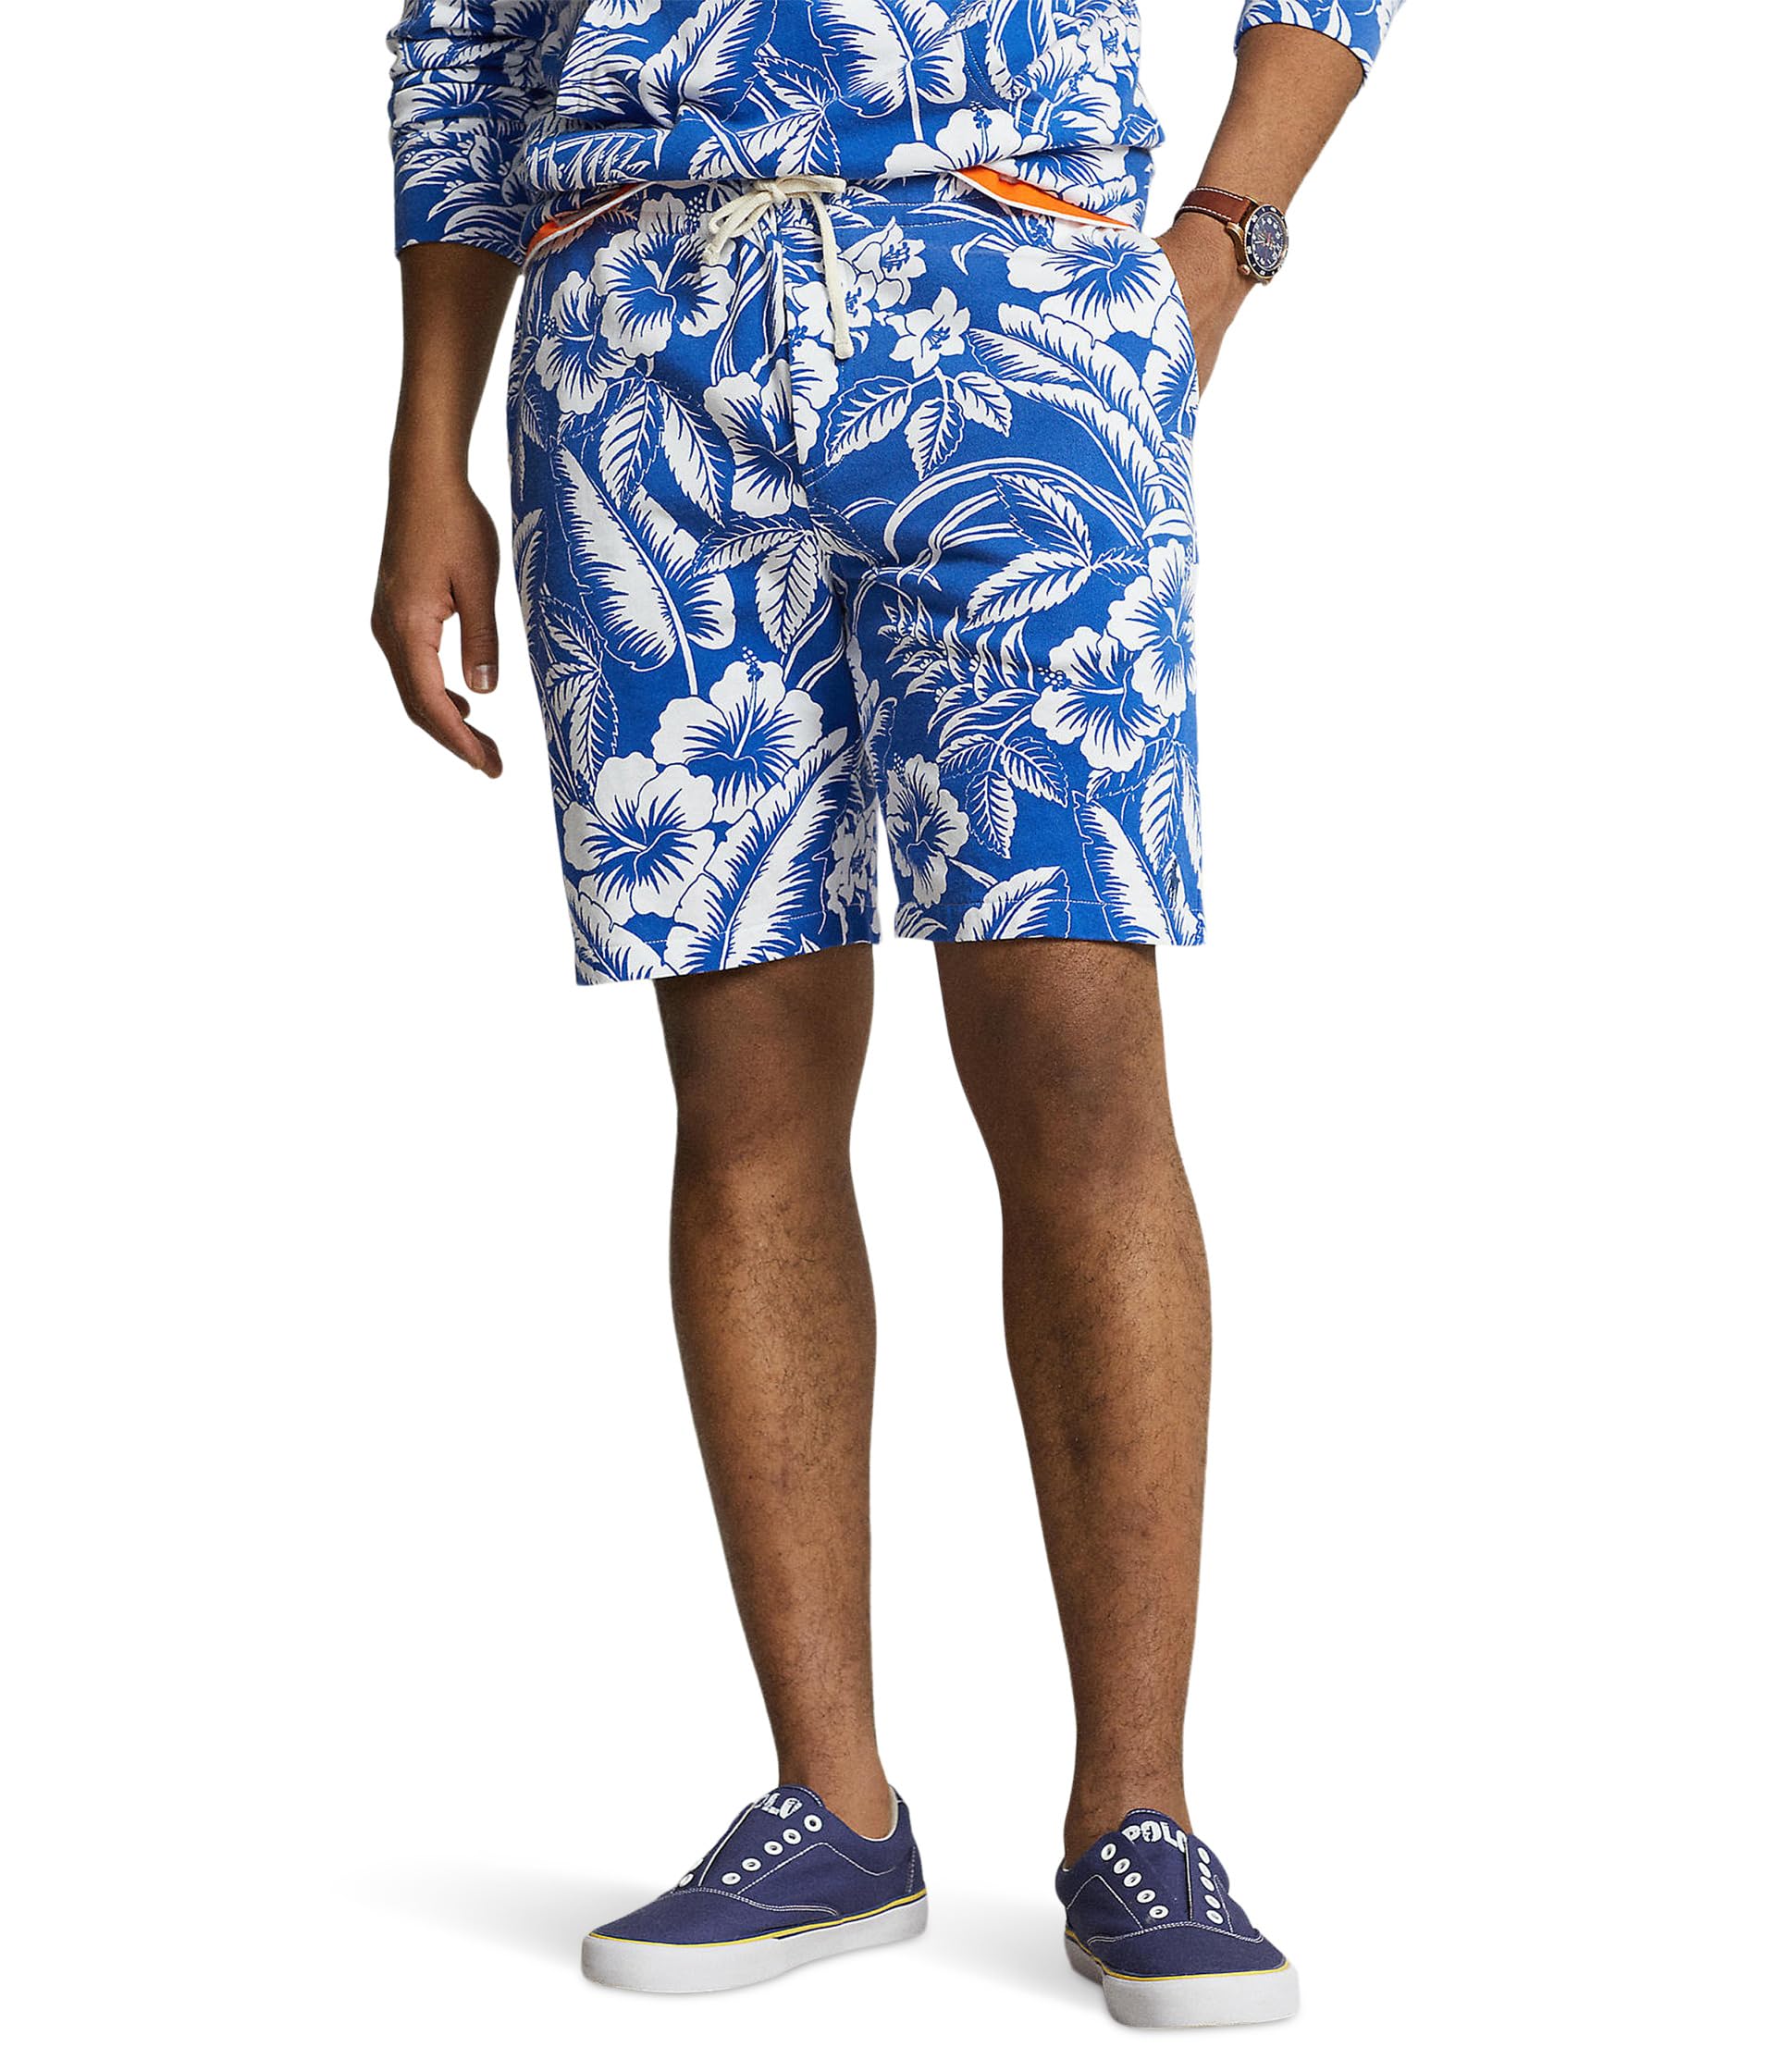 Махровые шорты с тропическим цветочным принтом шириной 8,5 дюйма Polo Ralph Lauren